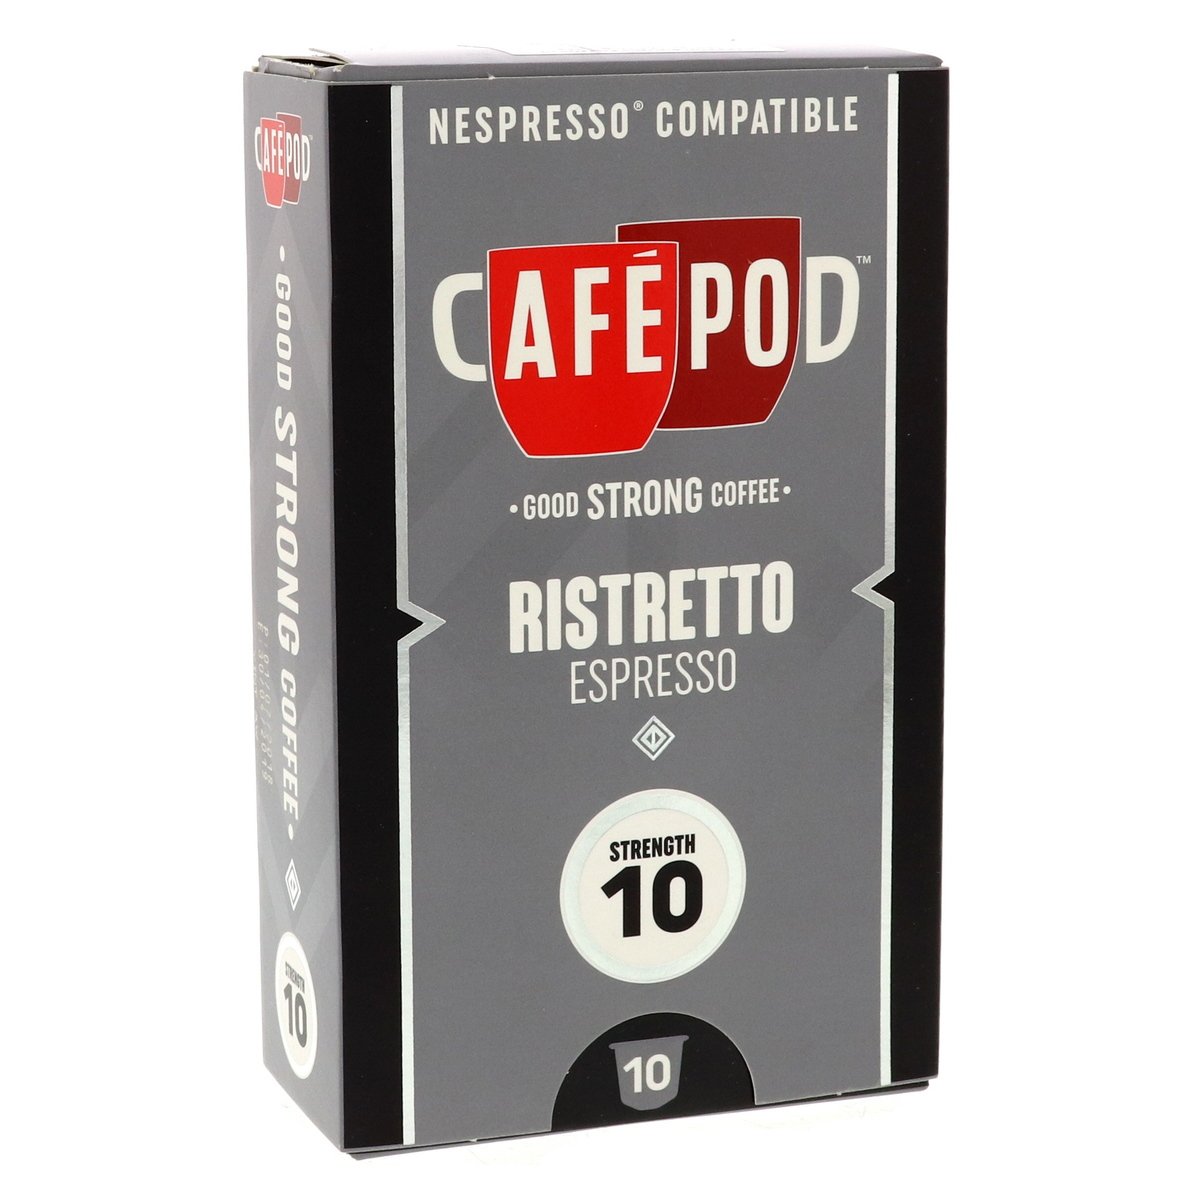 Cafe Pod Nespresso Compatible Ristretto Espresso 55 g